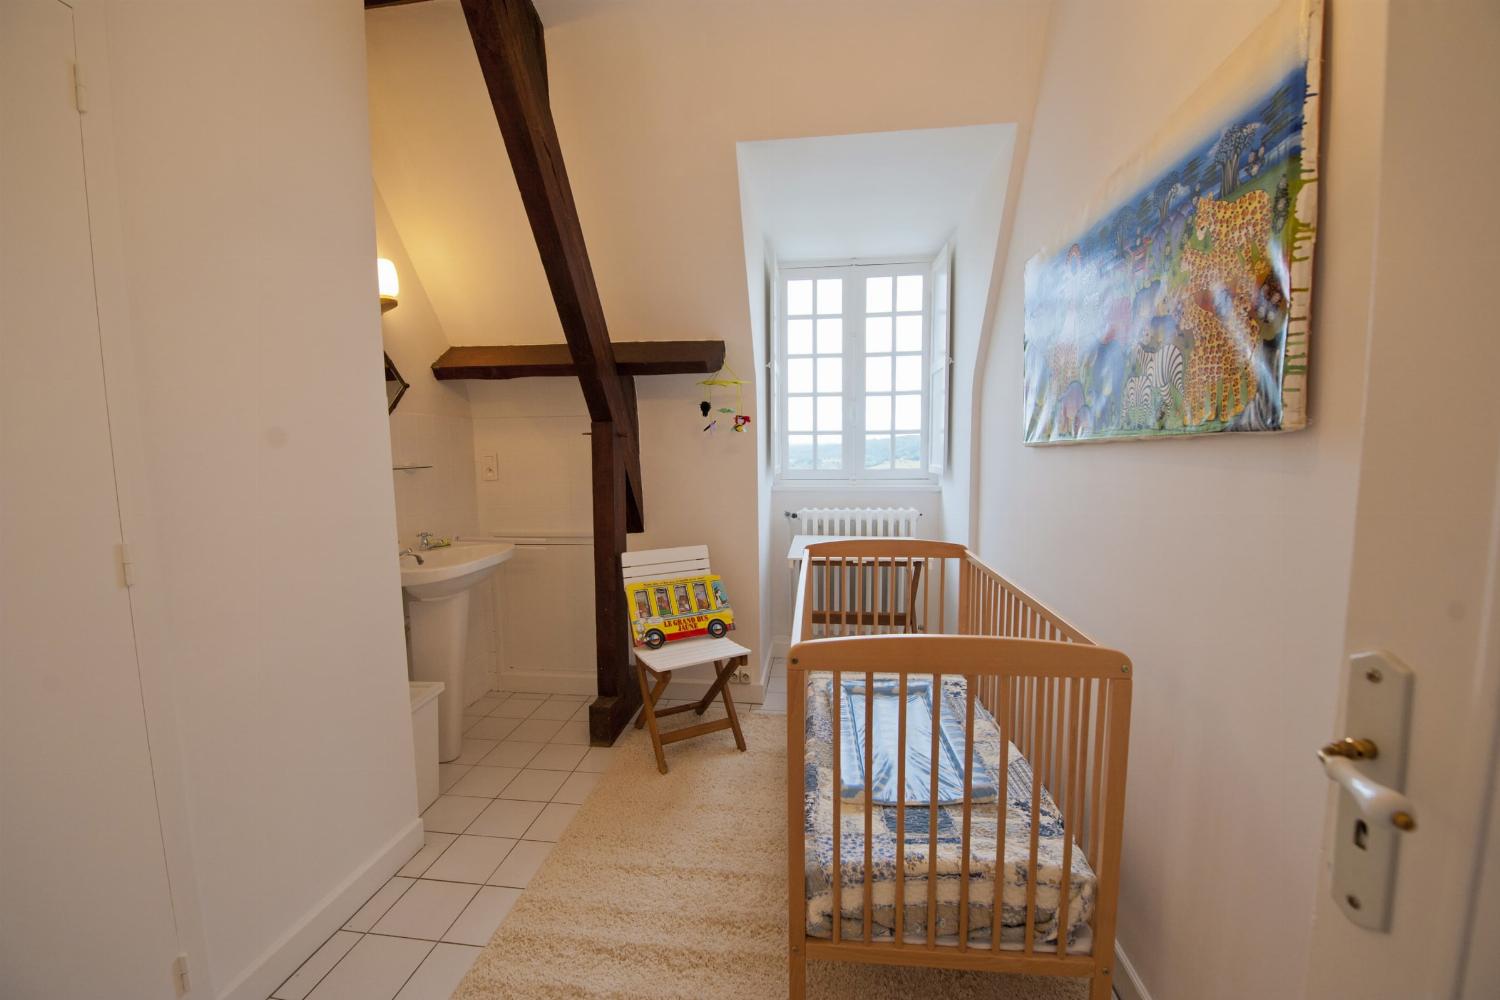 Chambre | Location maison en Dordogne